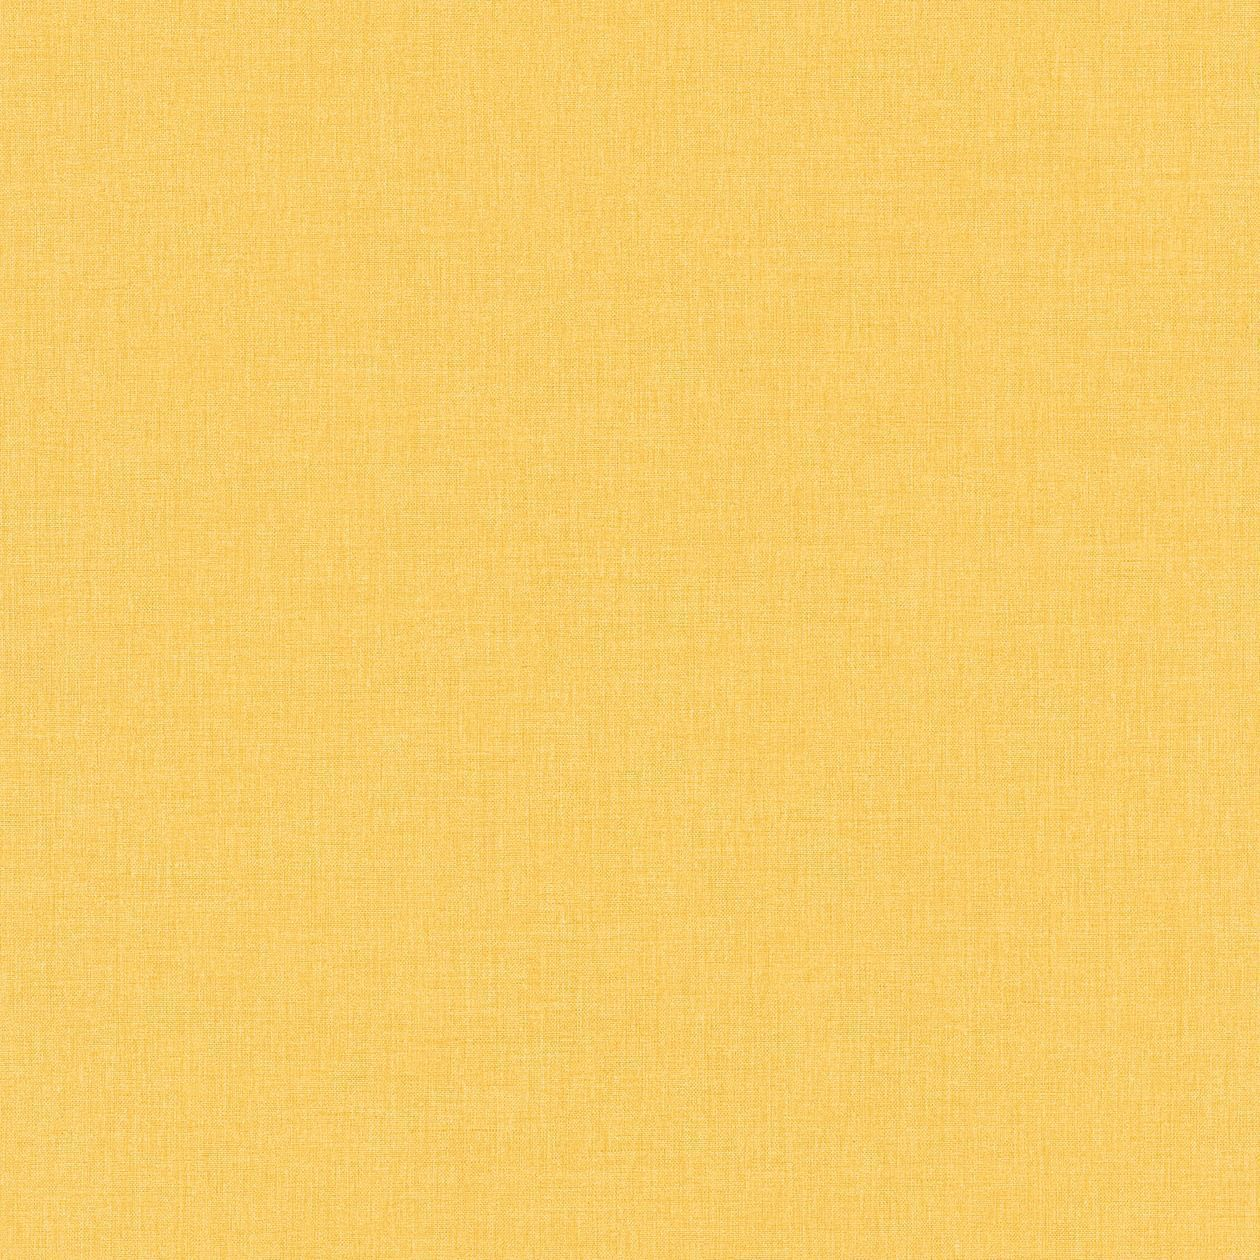 Обои 68522120 Linen Caselio - французские, виниловые, желтого тона, тканевая фактура, в стиле модерн, длина 10.05м, ширина 0.53м, рекомендуем детские.